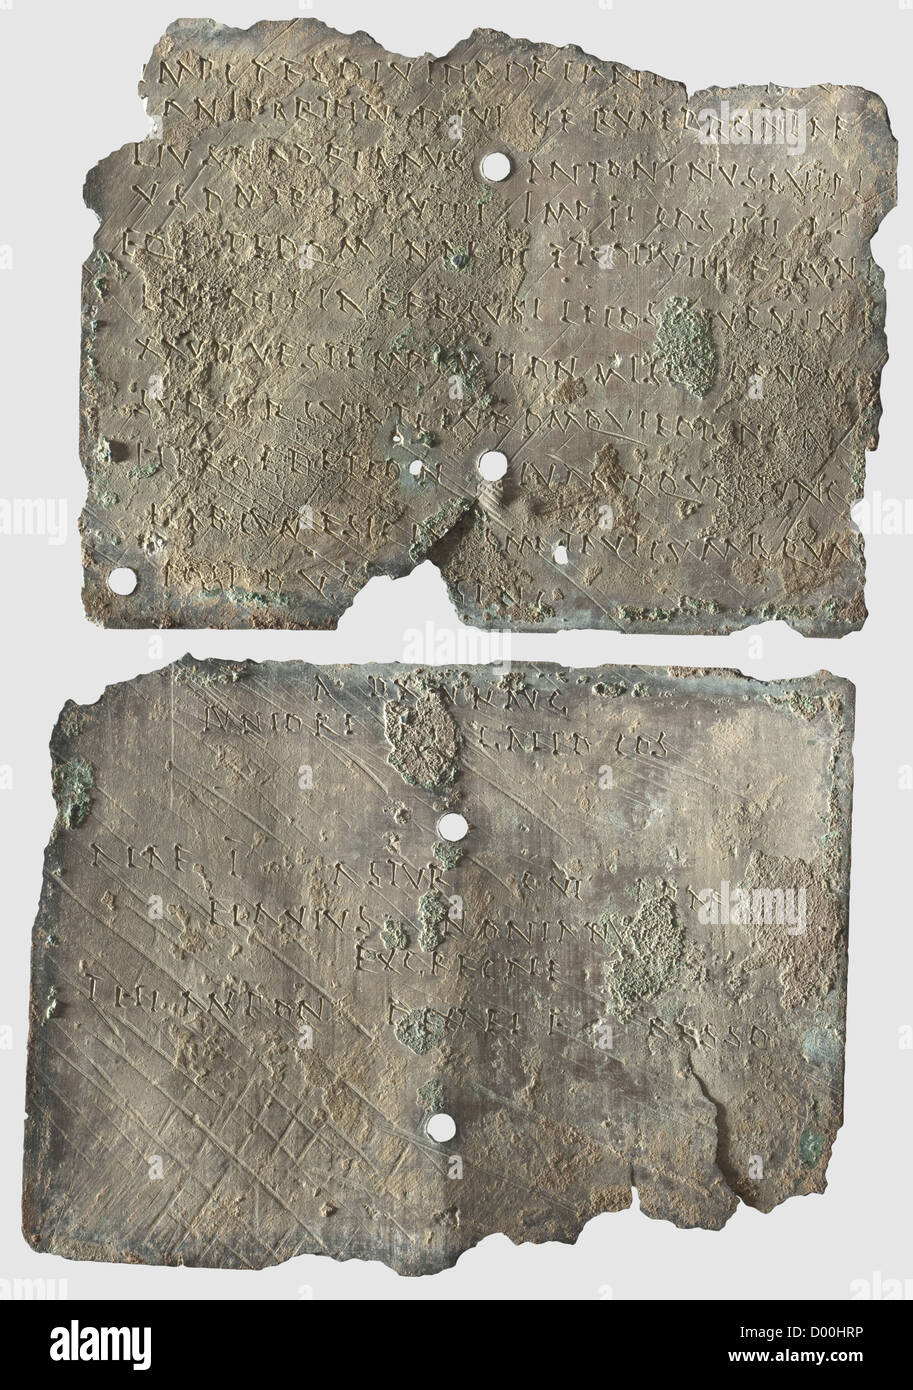 Un diplôme militaire pour cavalryman, du règne d'Antoninus Pie, daté du 146 AD.Bronze avec patine verdâtre.comprimés rectangulaires avec inscription gravée des deux côtés,deux trous percés au centre,fil de liaison et sceau manquant.légèrement gauchis,bords ébréchés,pertes.Dimensions 14.2 x 11 et 14.5 x 10.8 cm.diplôme d'octroi de la citoyenneté romaine délivré par Antoninus Pius en 146 AD pour la province Dacia Inferior.le bénéficiaire était un cavalier nommé Thiampo, fils de Dexaus,a Bessus,qui a conclu sa carrière militaire de 25 ans dans l'Ala i Asturum et était wirde,Additional-Rights-Clearences-not available Banque D'Images